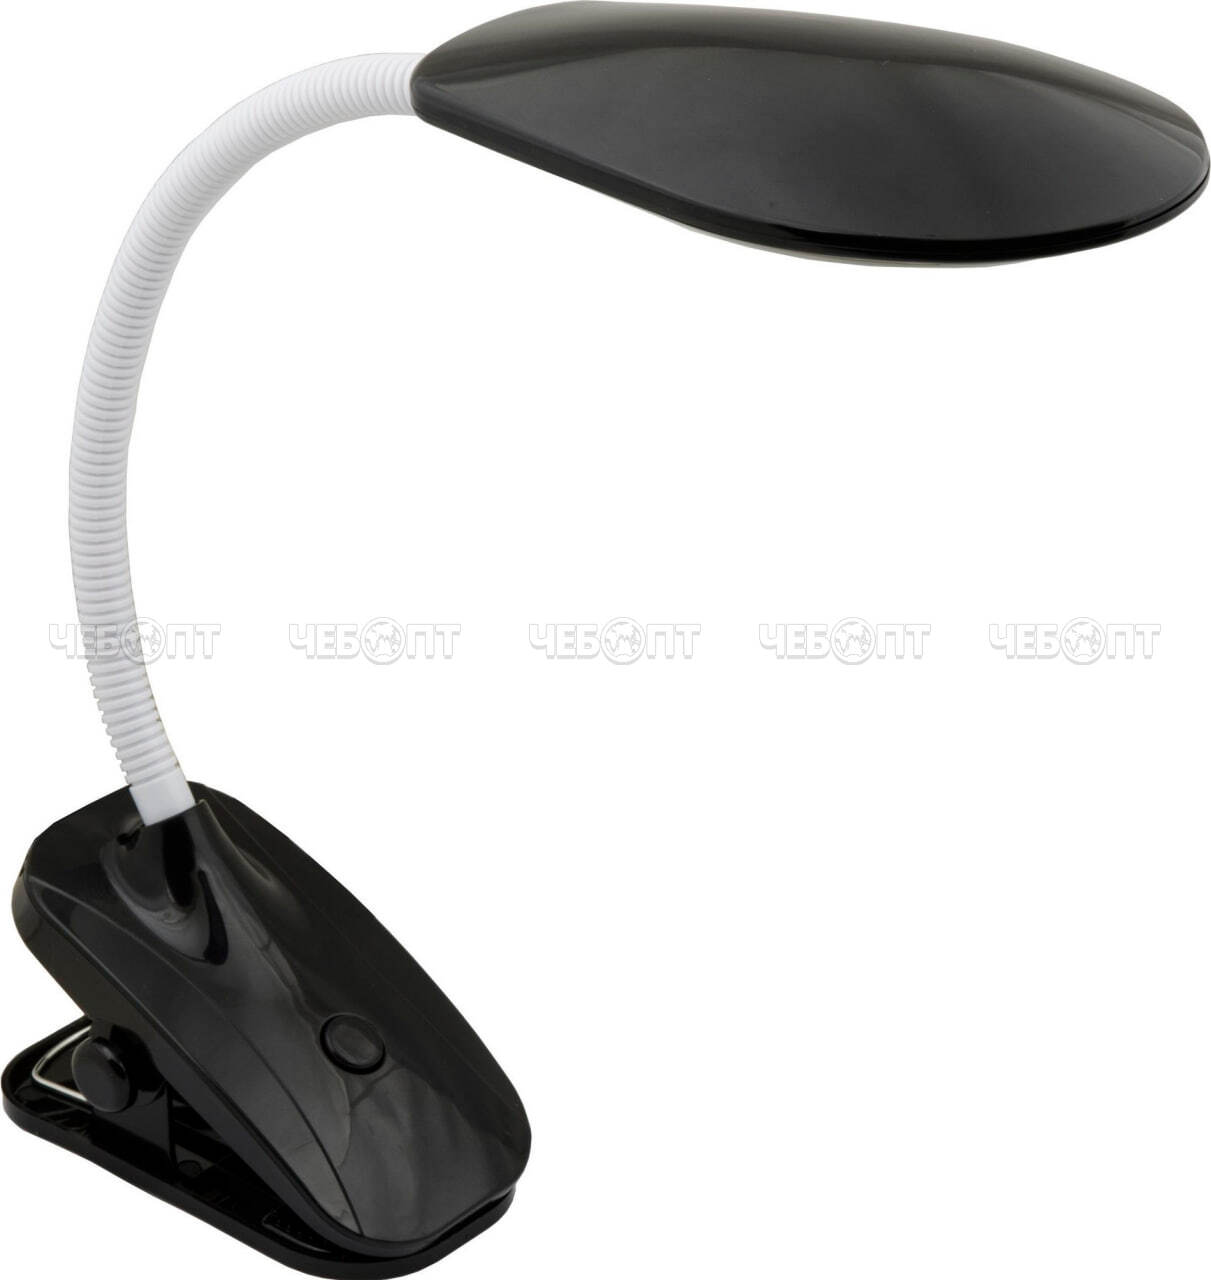 Лампа настольная TLD-546 Black 35 Вт, на прищепке, механический выключатель, светодиодная [20] UNIEL. ЧЕБОПТ.